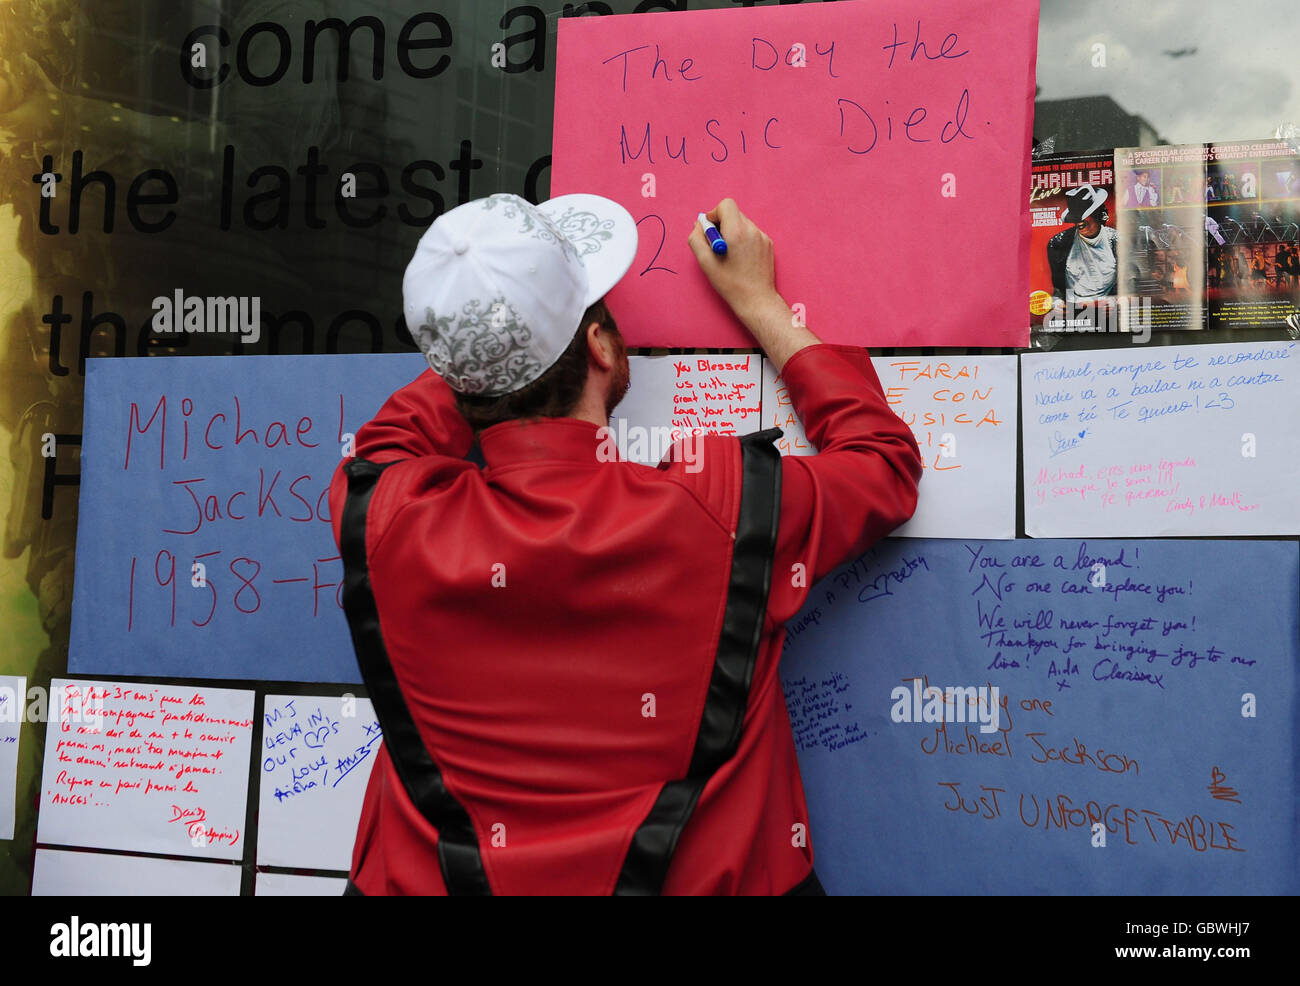 Los fans dejan mensajes en un santuario para la estrella pop Michael Jackson fuera de una tienda HMV en Leicester Square, Londres. Foto de stock